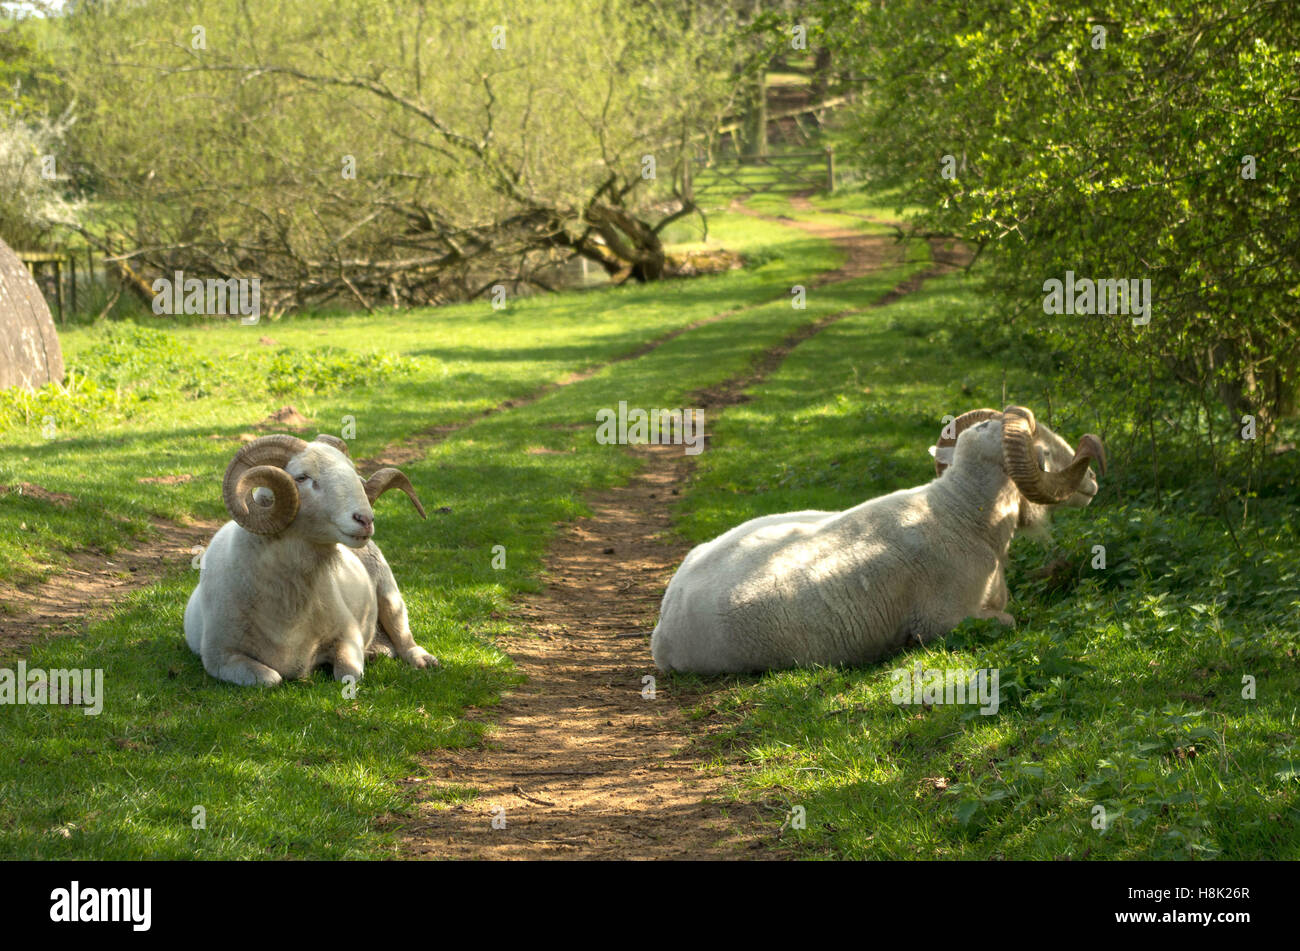 La imagen de una oveja blanca o émbolos con largos cuernos rizado Foto de stock